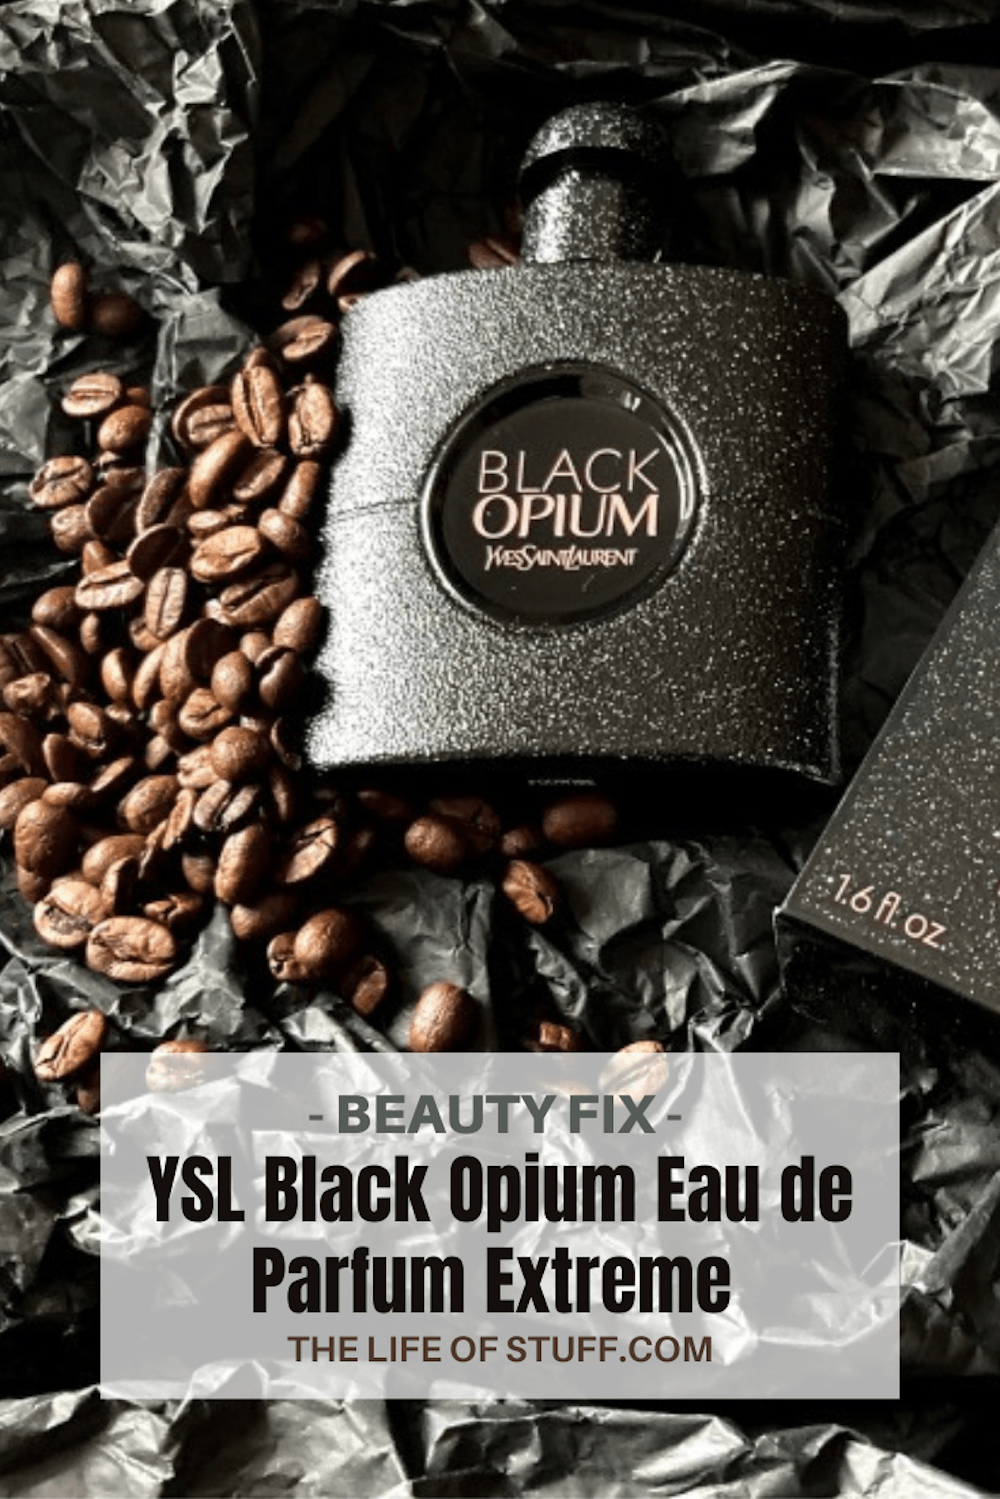 Beauty Fix - YSL Black Opium Eau de Parfum Extreme - The Life of Stuff